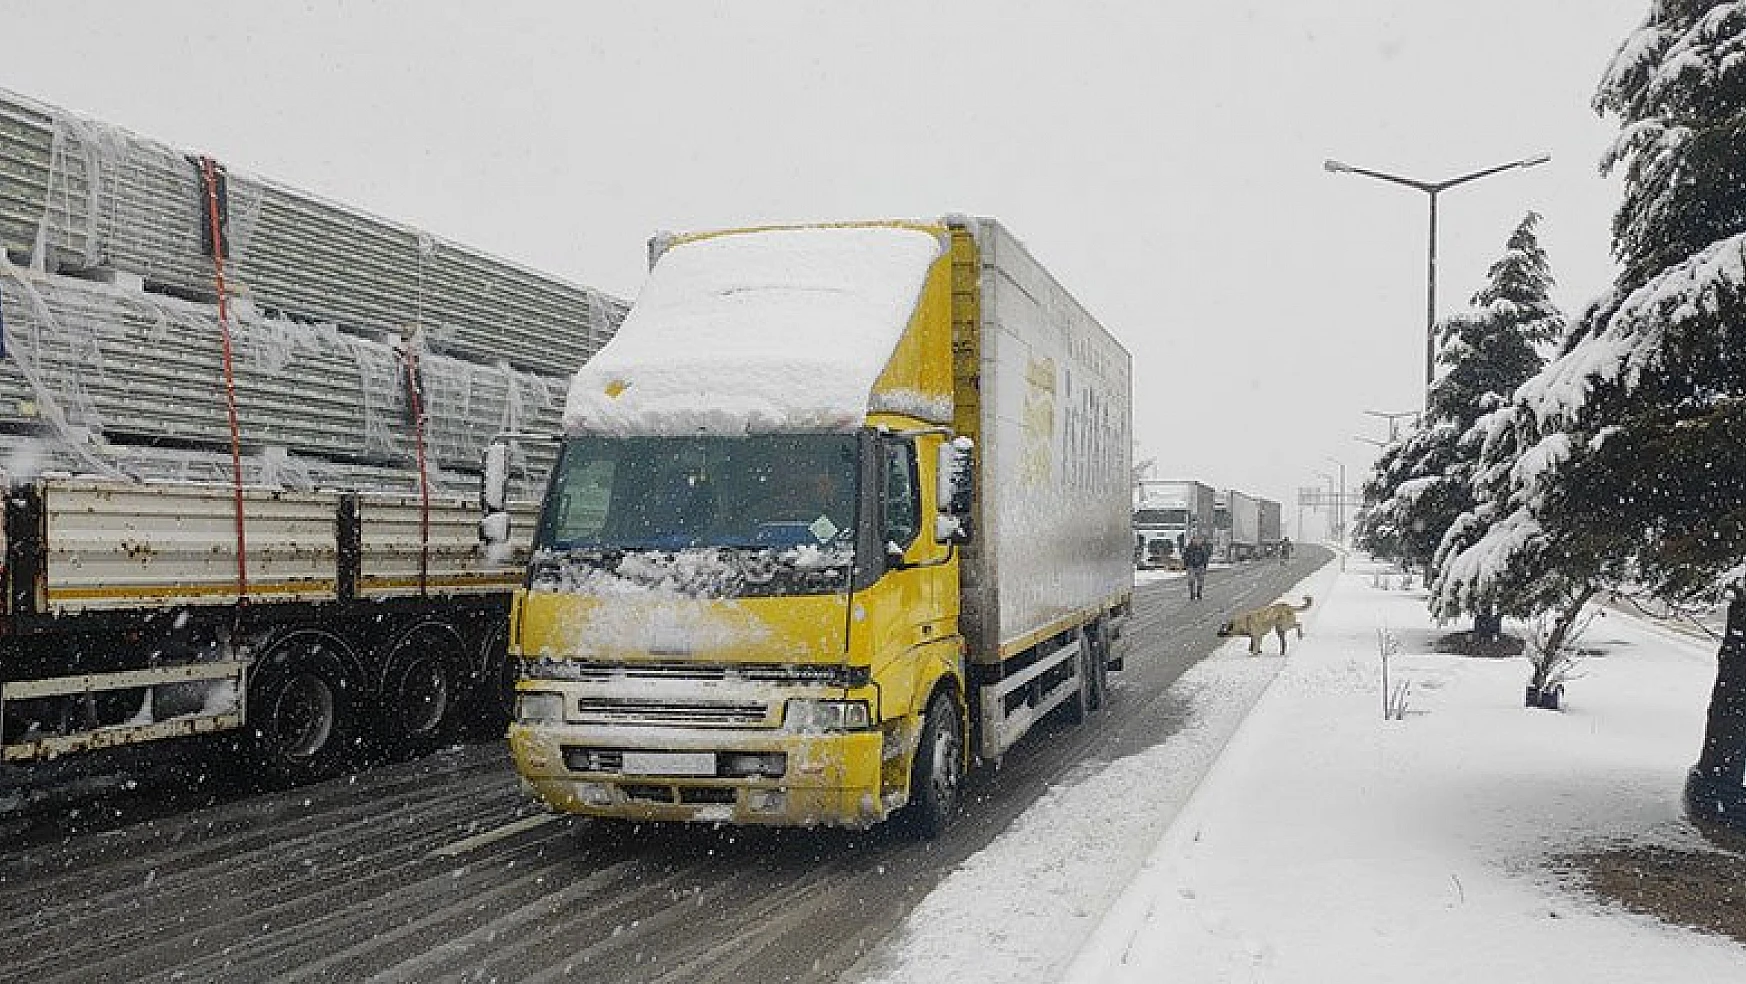 Antalya-Konya karayolu tüm araç trafiğine kapatıldı